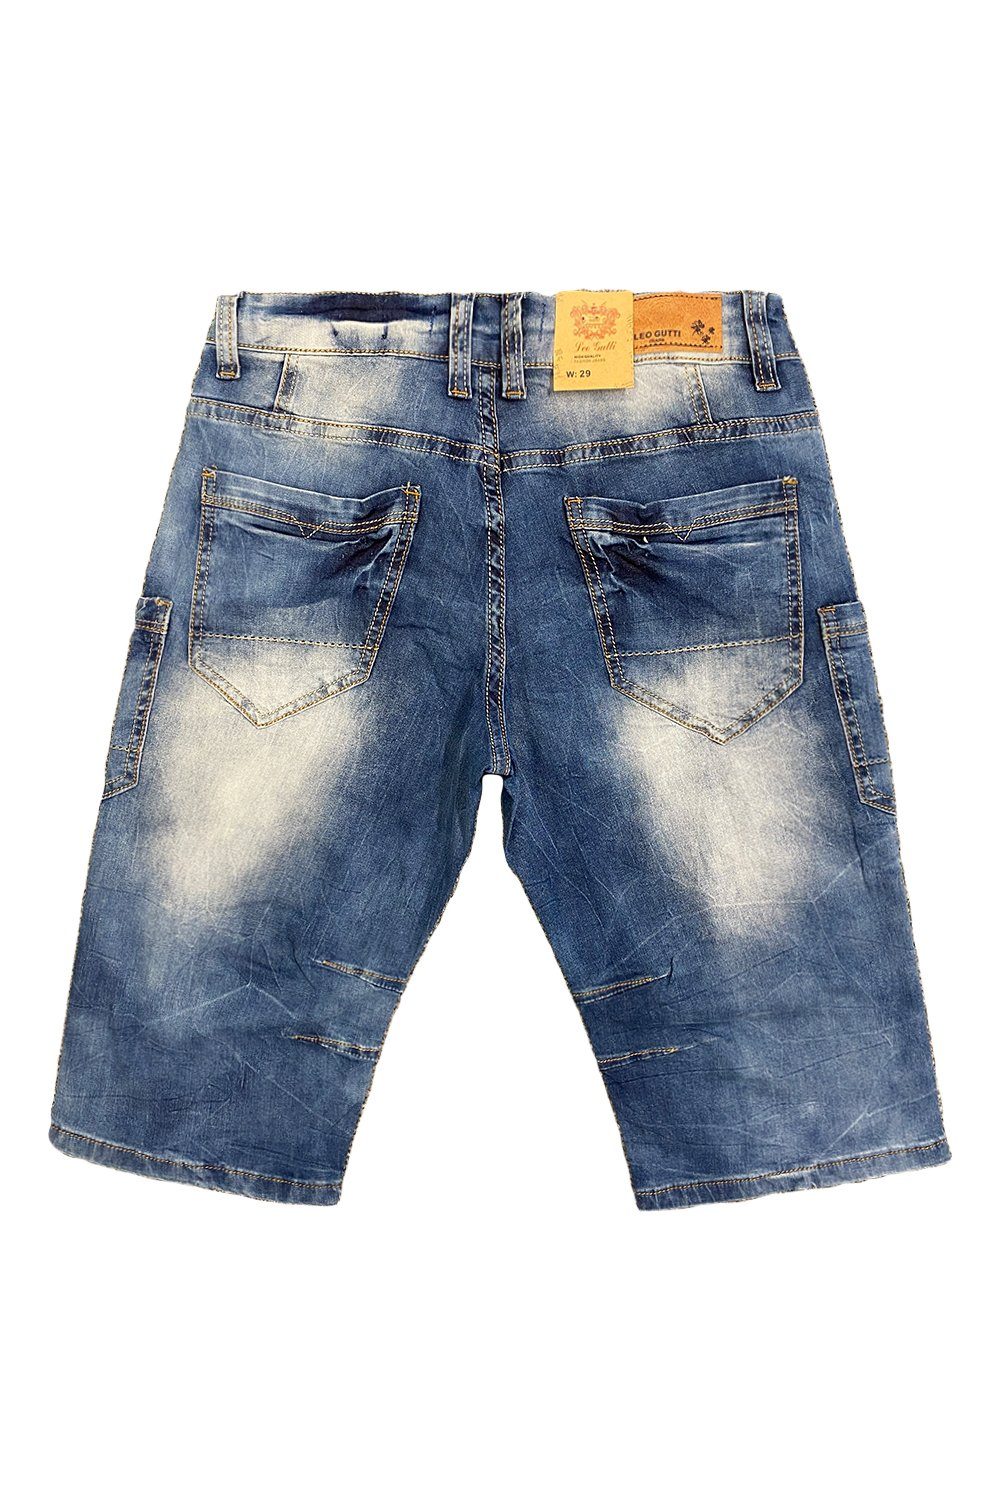 LEO GUTTI Jeansshorts (1-tlg) Jeans in Kurze 3151 5-Pocket Blau Sommer Shorts Hose Jeans